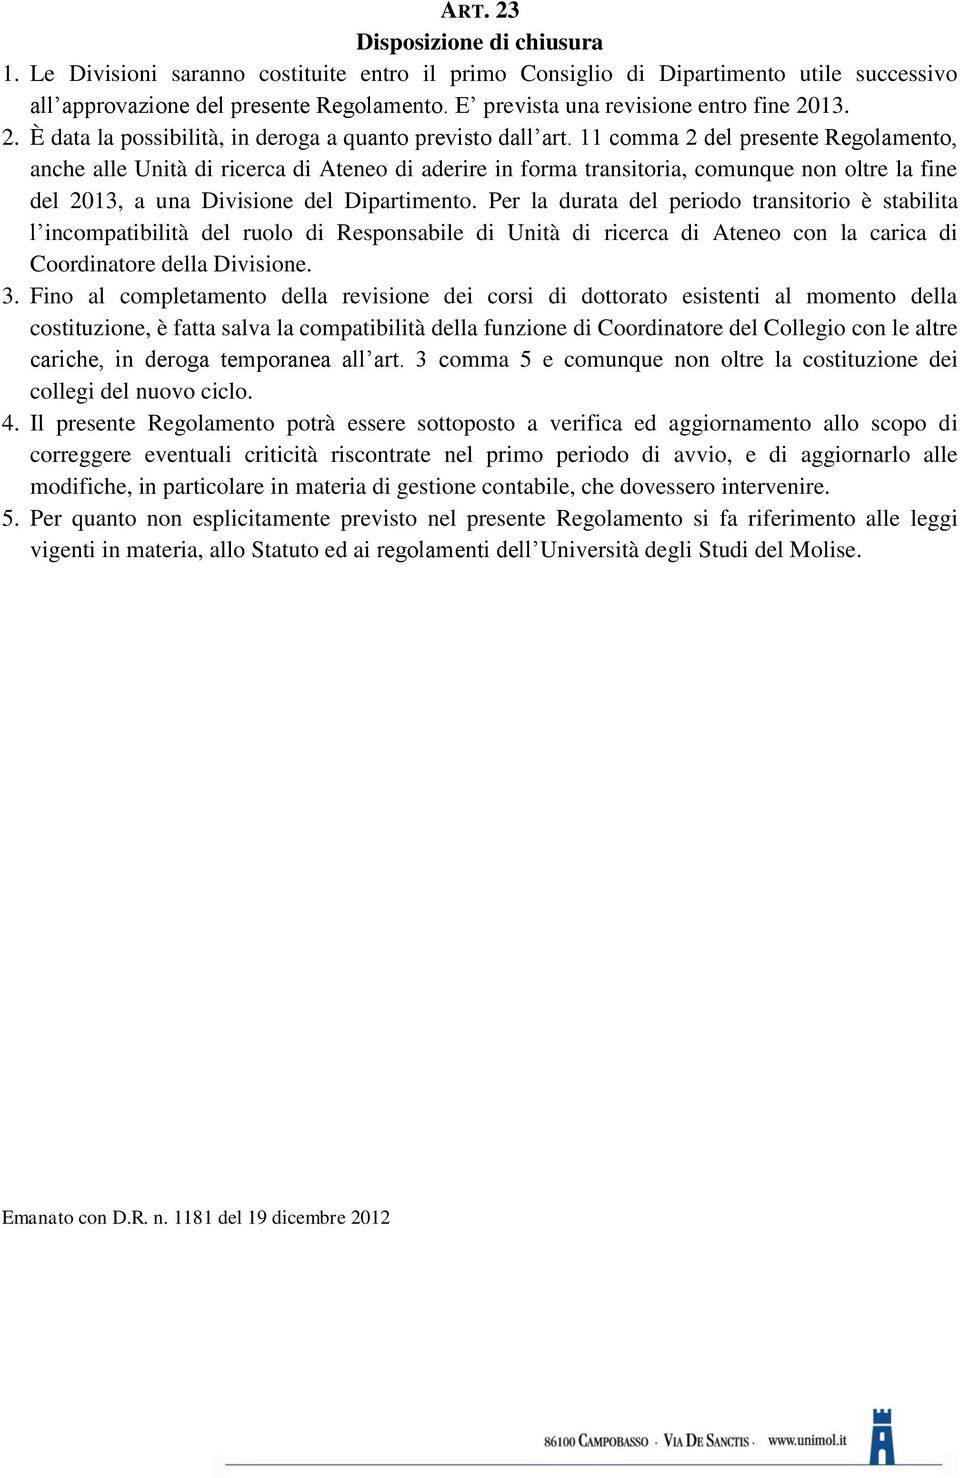 11 comma 2 del presente Regolamento, anche alle Unità di ricerca di Ateneo di aderire in forma transitoria, comunque non oltre la fine del 2013, a una Divisione del Dipartimento.